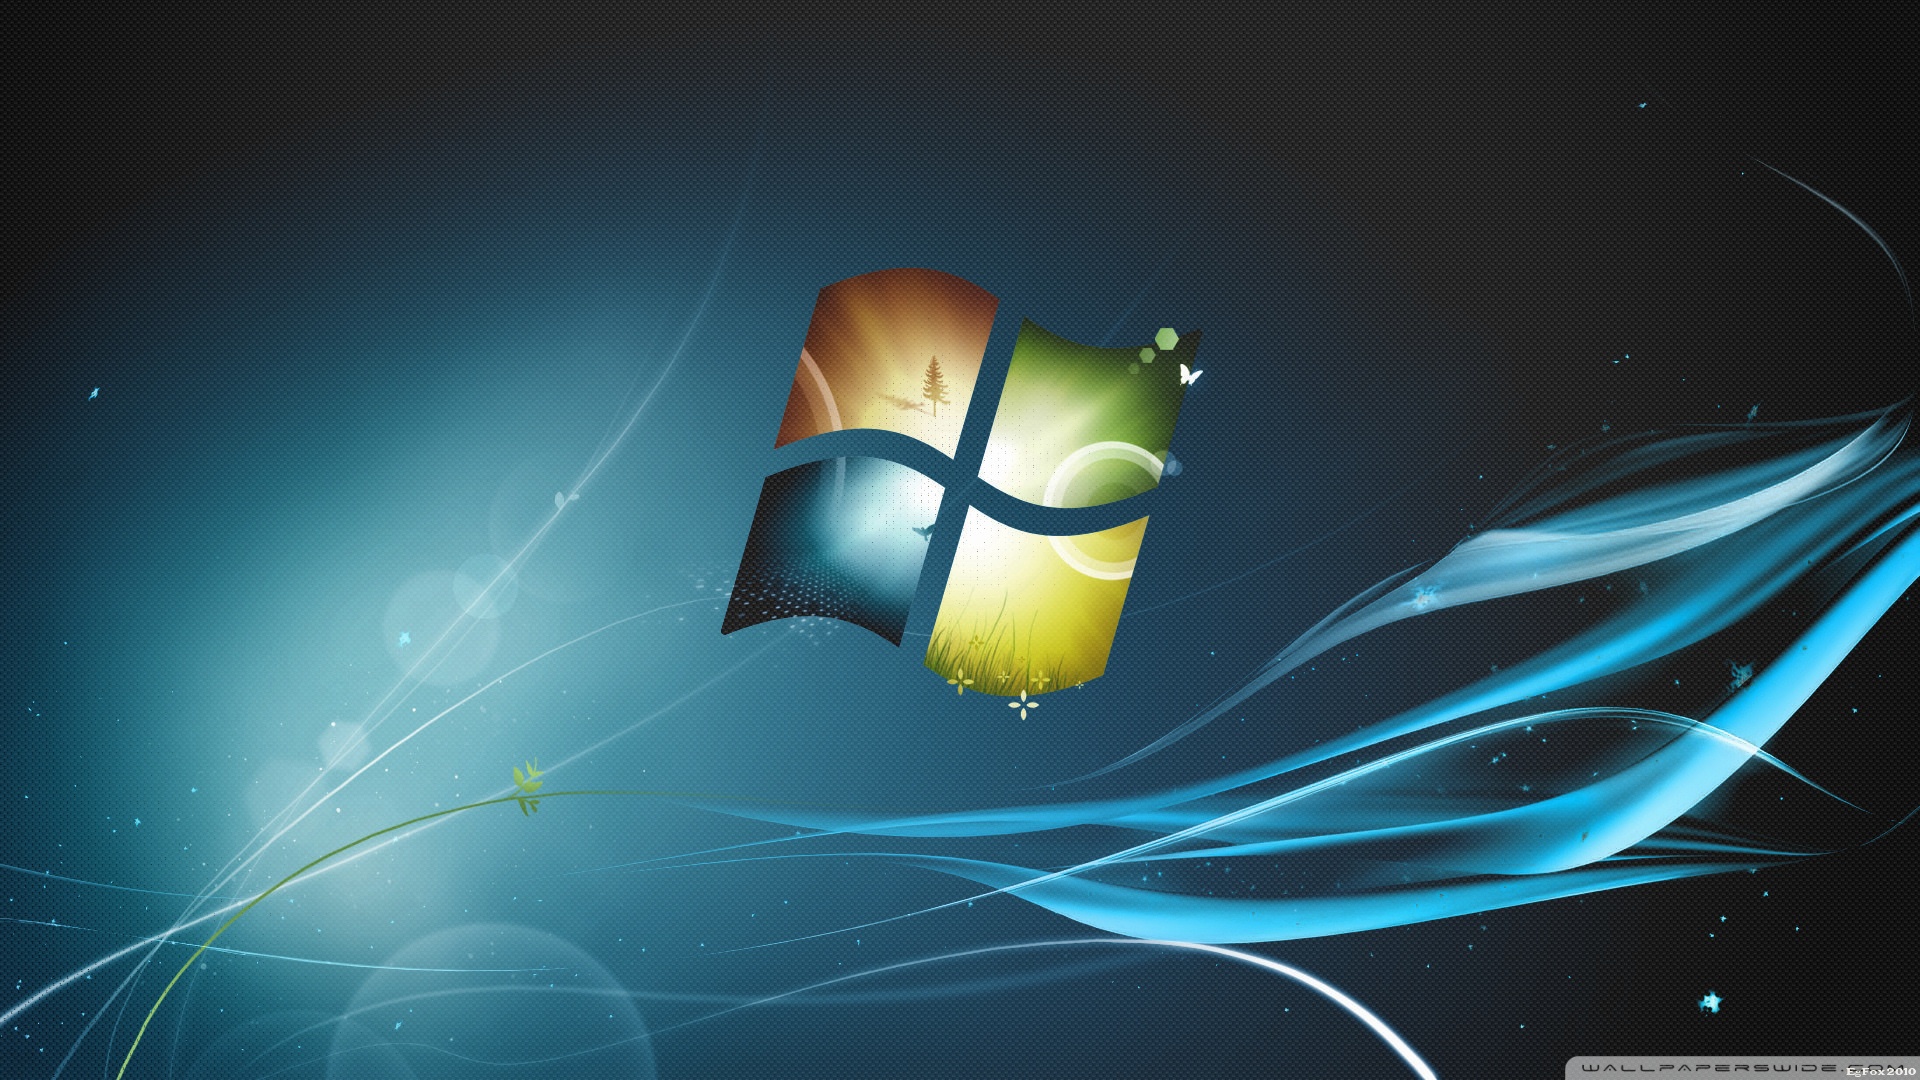 Hình nền Windows 7 đẹp: Bạn muốn có một bức hình nền đẹp trên máy tính của mình? Hãy xem ngay những hình nền đẹp nhất dành cho Windows 7! Với những đường nét tinh tế, bức tranh đầy sắc màu và cách thức sắp xếp hợp lý, các hình nền này sẽ khiến bạn say đắm từ cái nhìn đầu tiên. Hãy tận hưởng cảm giác thư giãn và nổi bật khi sử dụng máy tính của mình.